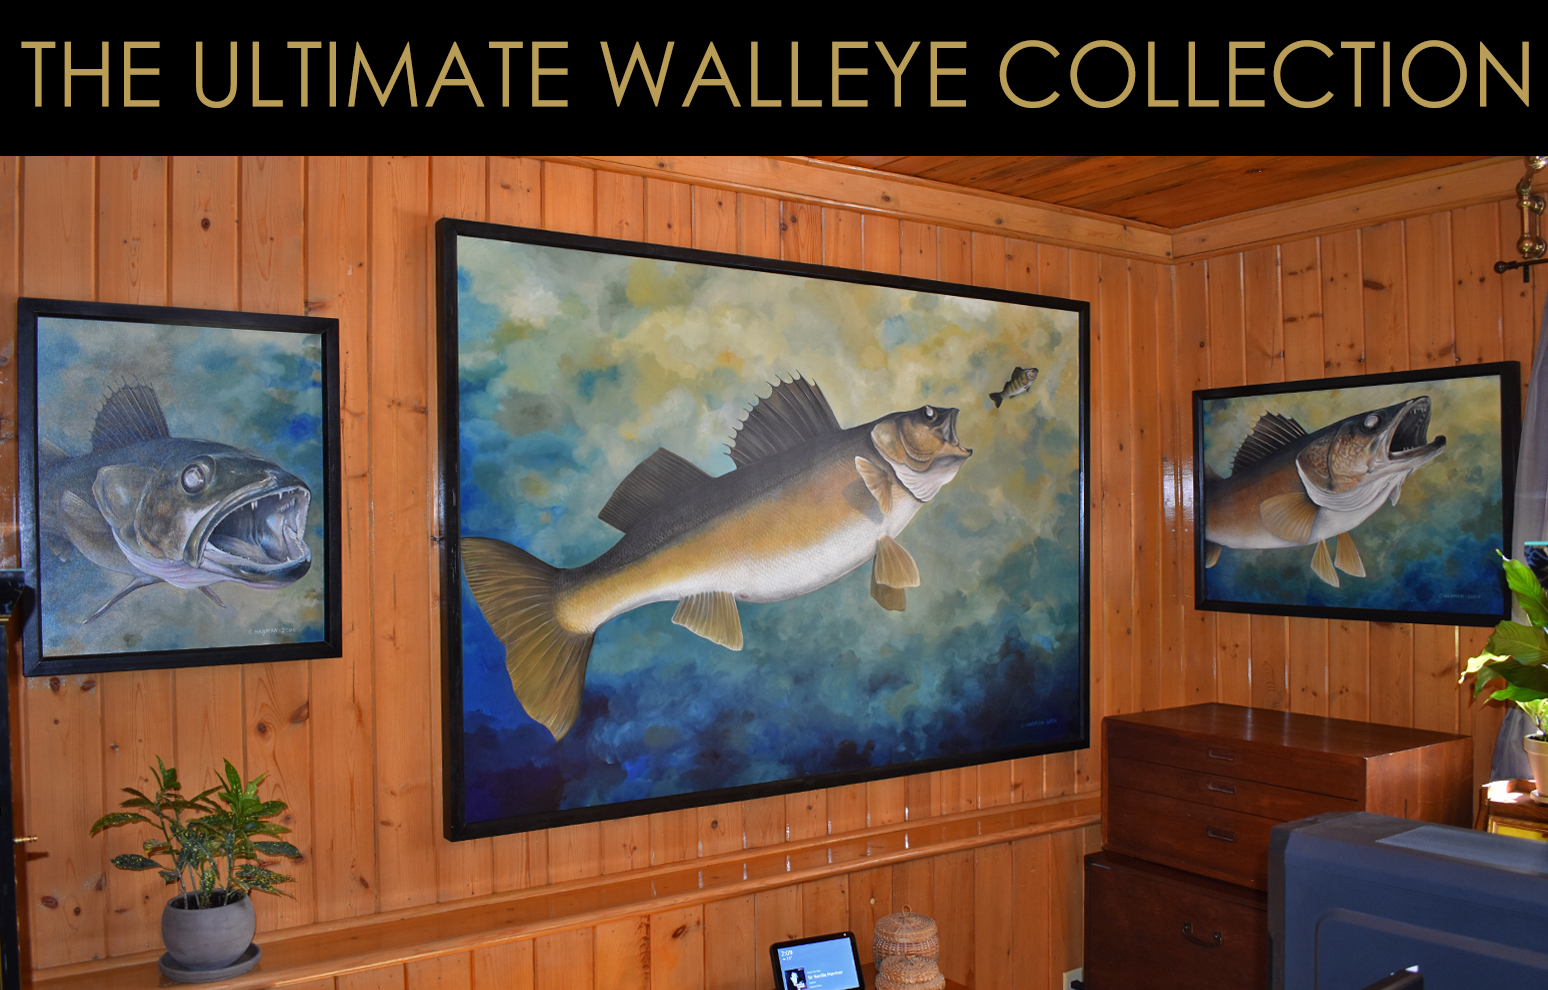 Walleye Paintings, Walleye Art, Walleye Art, Paintings of Fish, Fish Paintings, Walleye, Original Paintings of Walleye, Walleye Art Paintings, Large Walleye Paintings, Walleye, Michigan